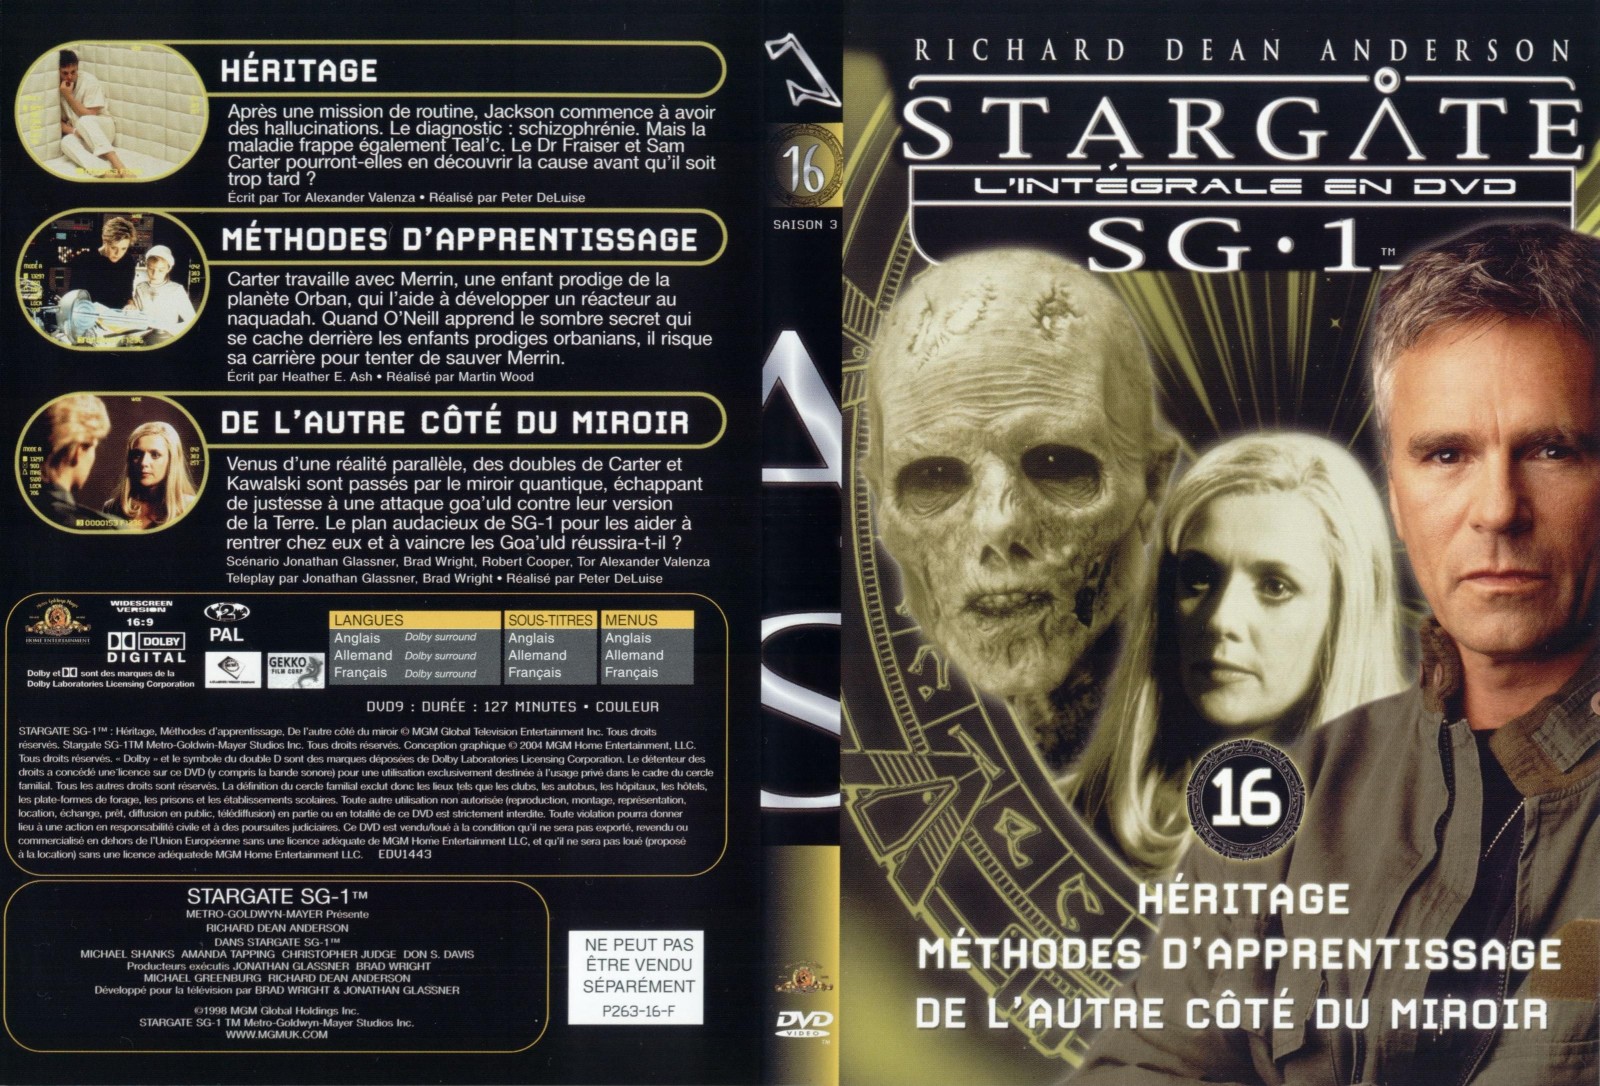 Jaquette DVD Stargate saison 3 vol 16